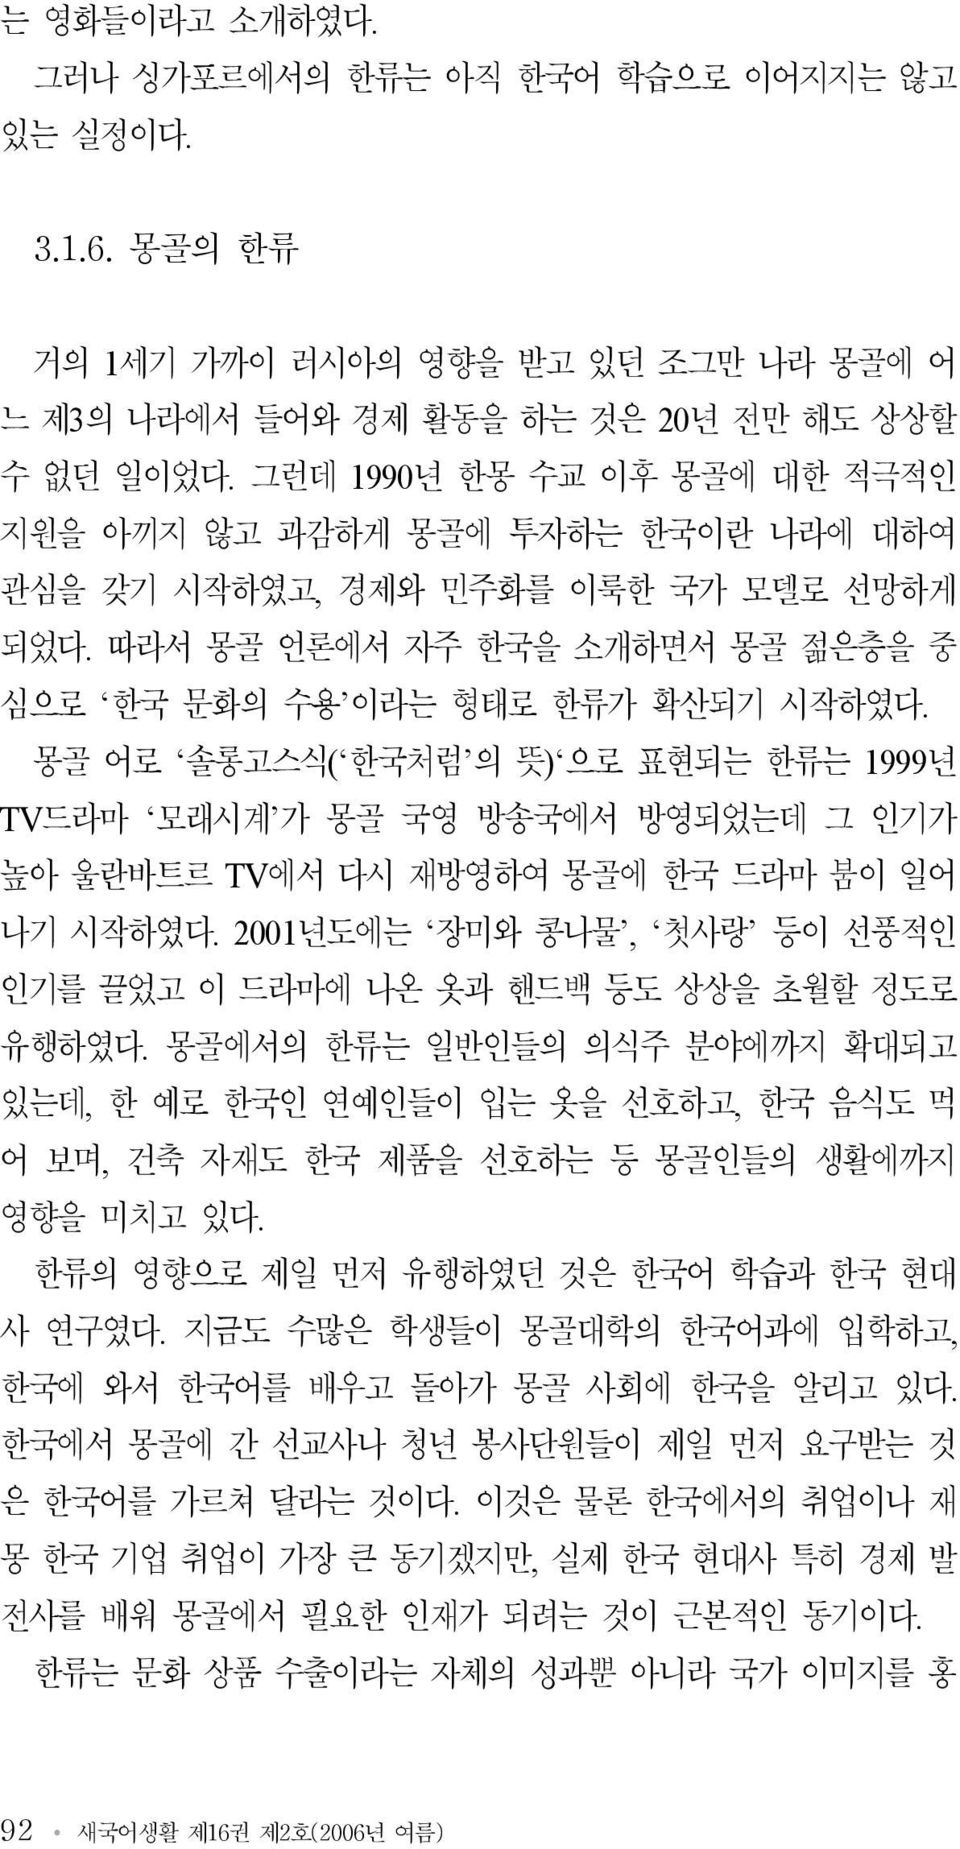 몽골 어로 솔롱고스식( 한국처럼 의 뜻) 으로 표현되는 한류는 1999년 TV드라마 모래시계 가 몽골 국영 방송국에서 방영되었는데 그 인기가 높아 울란바트르 TV에서 다시 재방영하여 몽골에 한국 드라마 붐이 일어 나기 시작하였다.